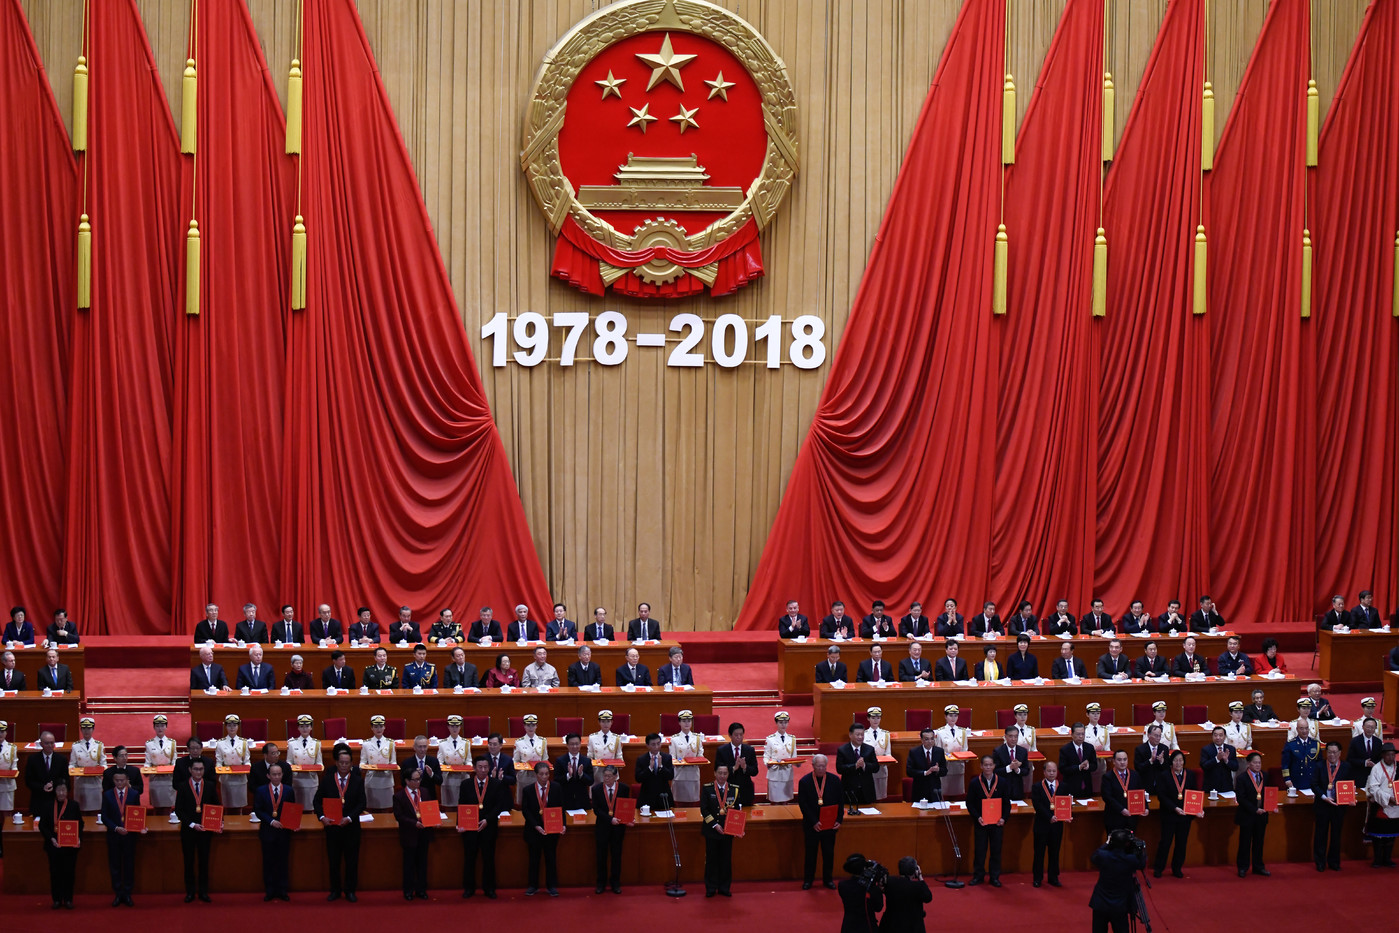 Xi Jinping célèbre 40 années de réformes économiques chinoises